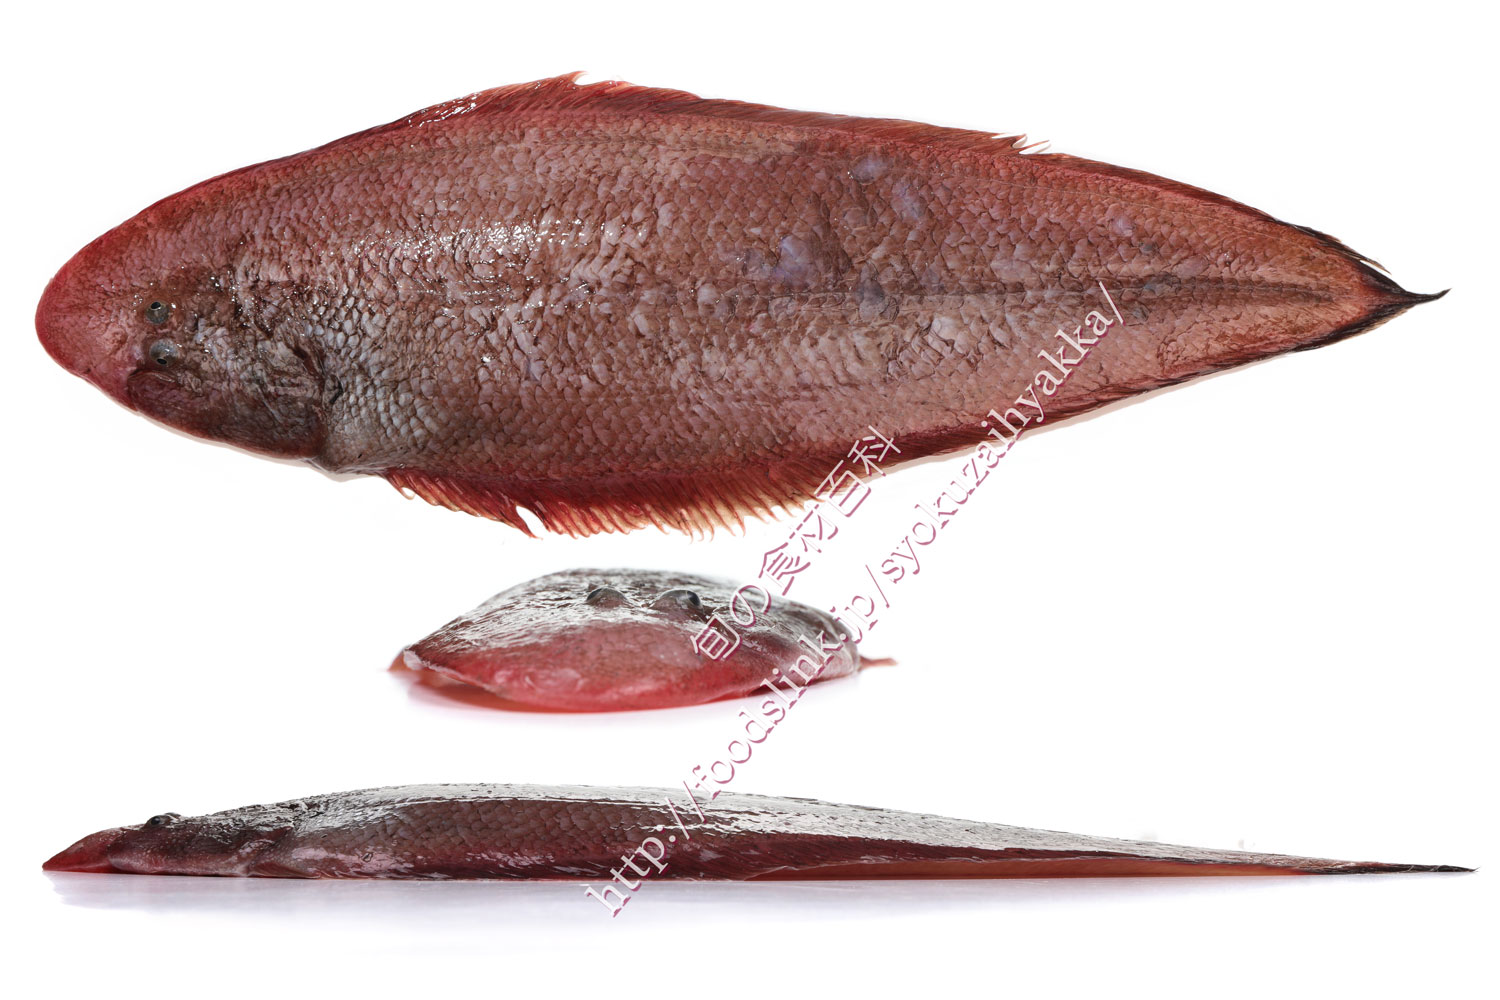 イヌノシタ アカシタビラメ 赤舌平目 ウシノシタ科 旬の魚介百科